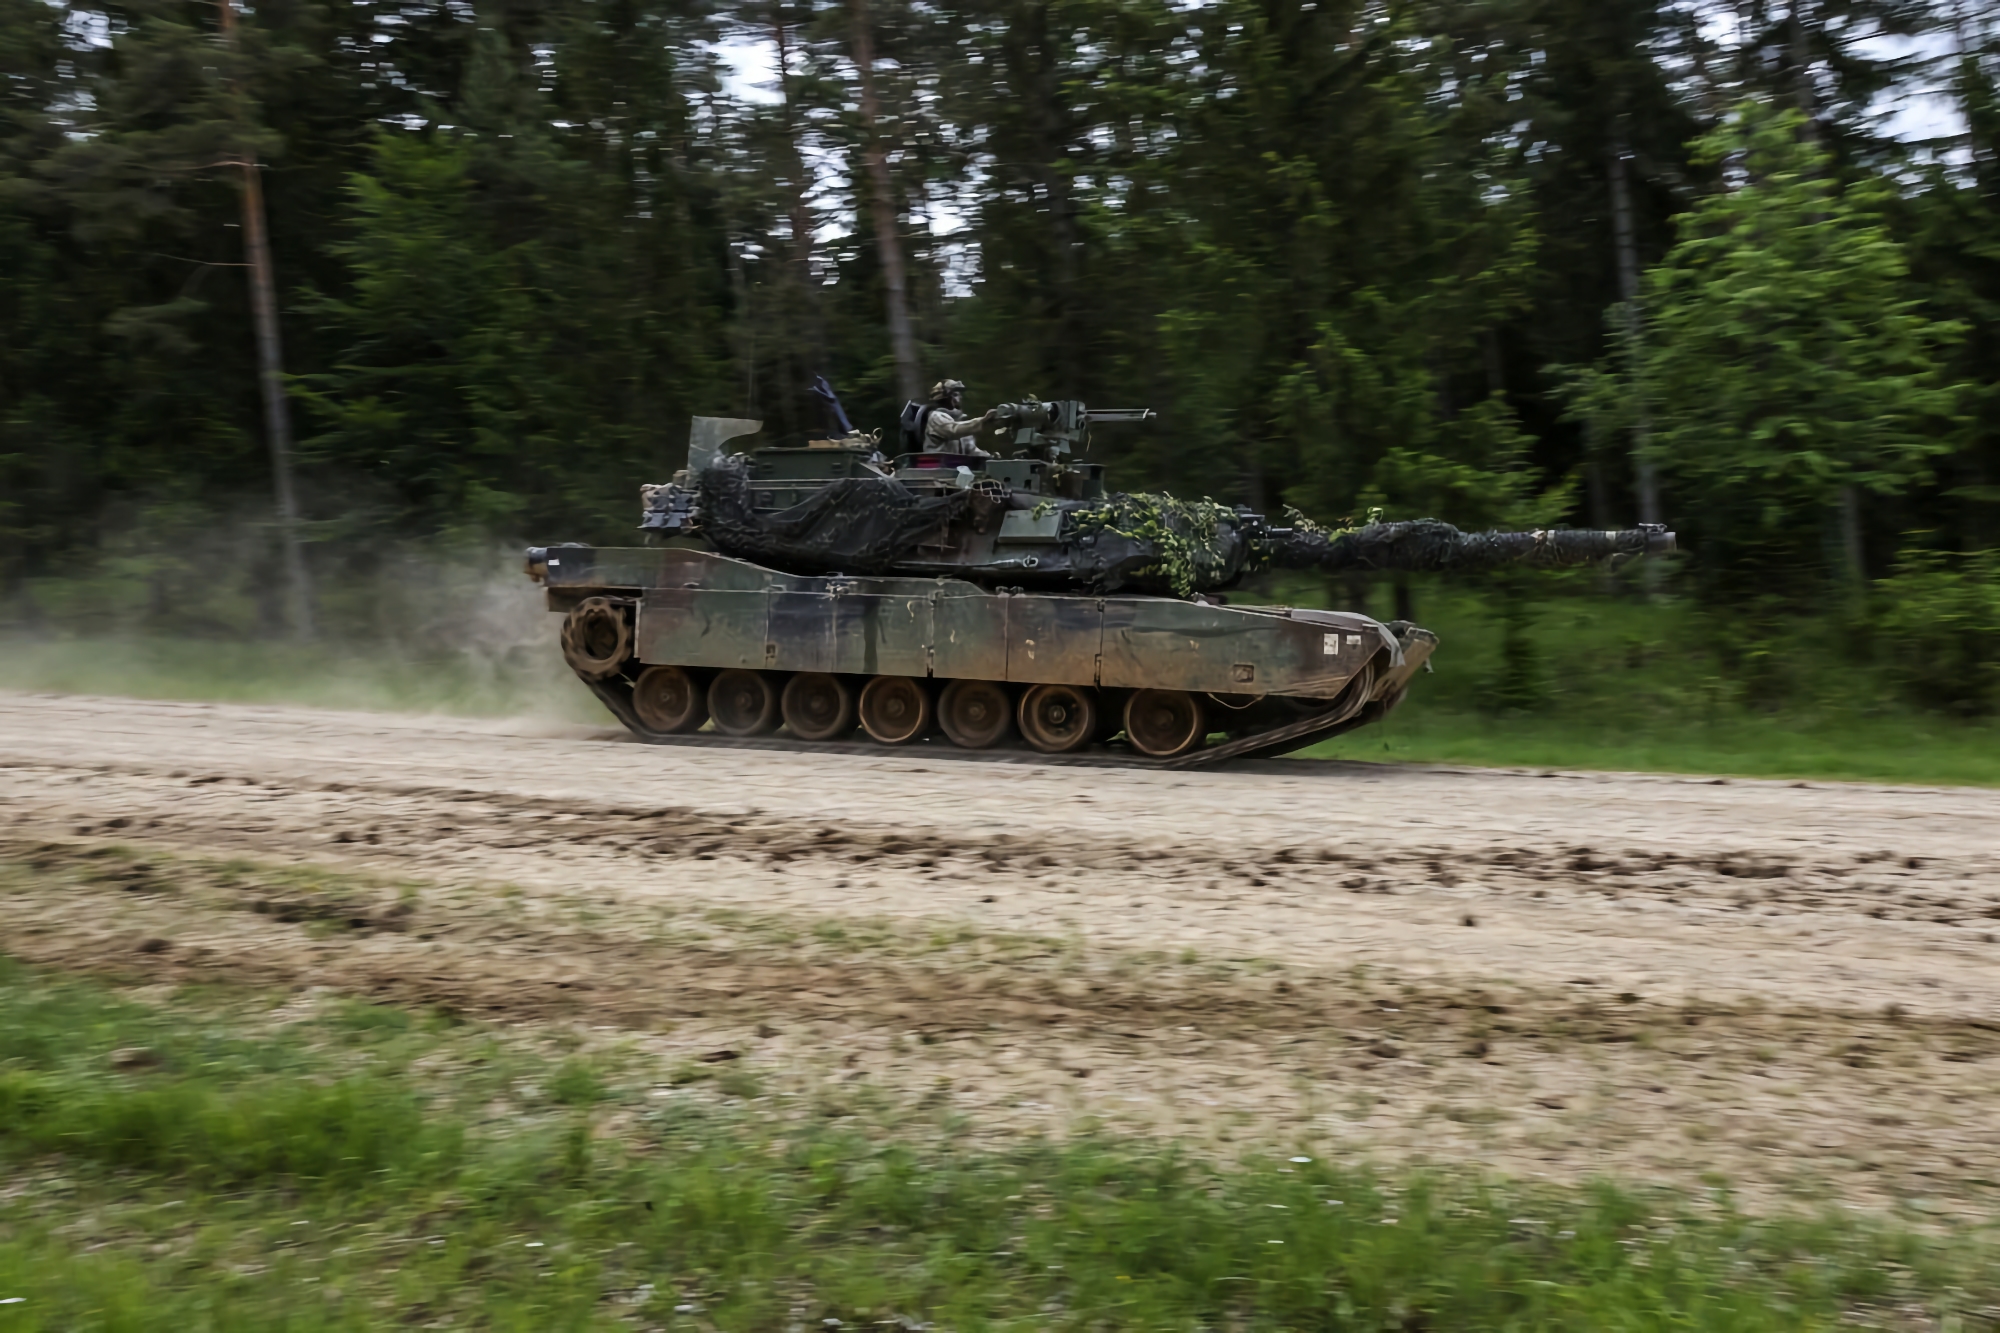 AFU visade de första bilderna av den amerikanska stridsvagnen M1 Abrams i aktion